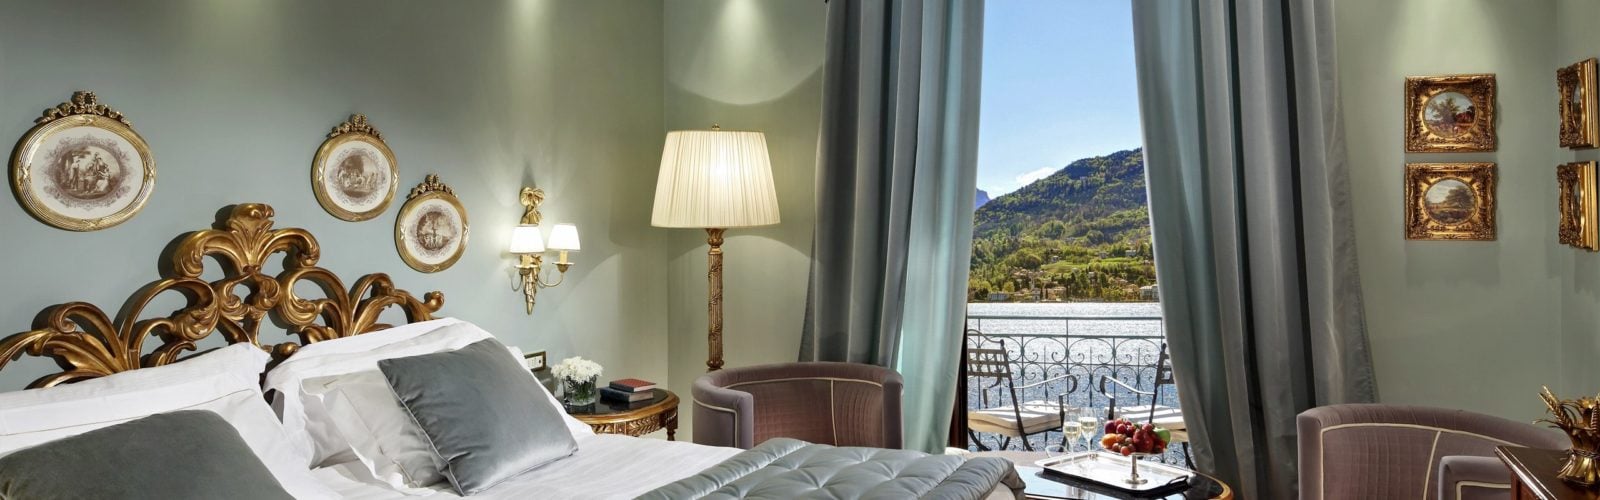 Prestige Room with Lake View, Grand Tremezzo Hotel, Lake Como, Italy